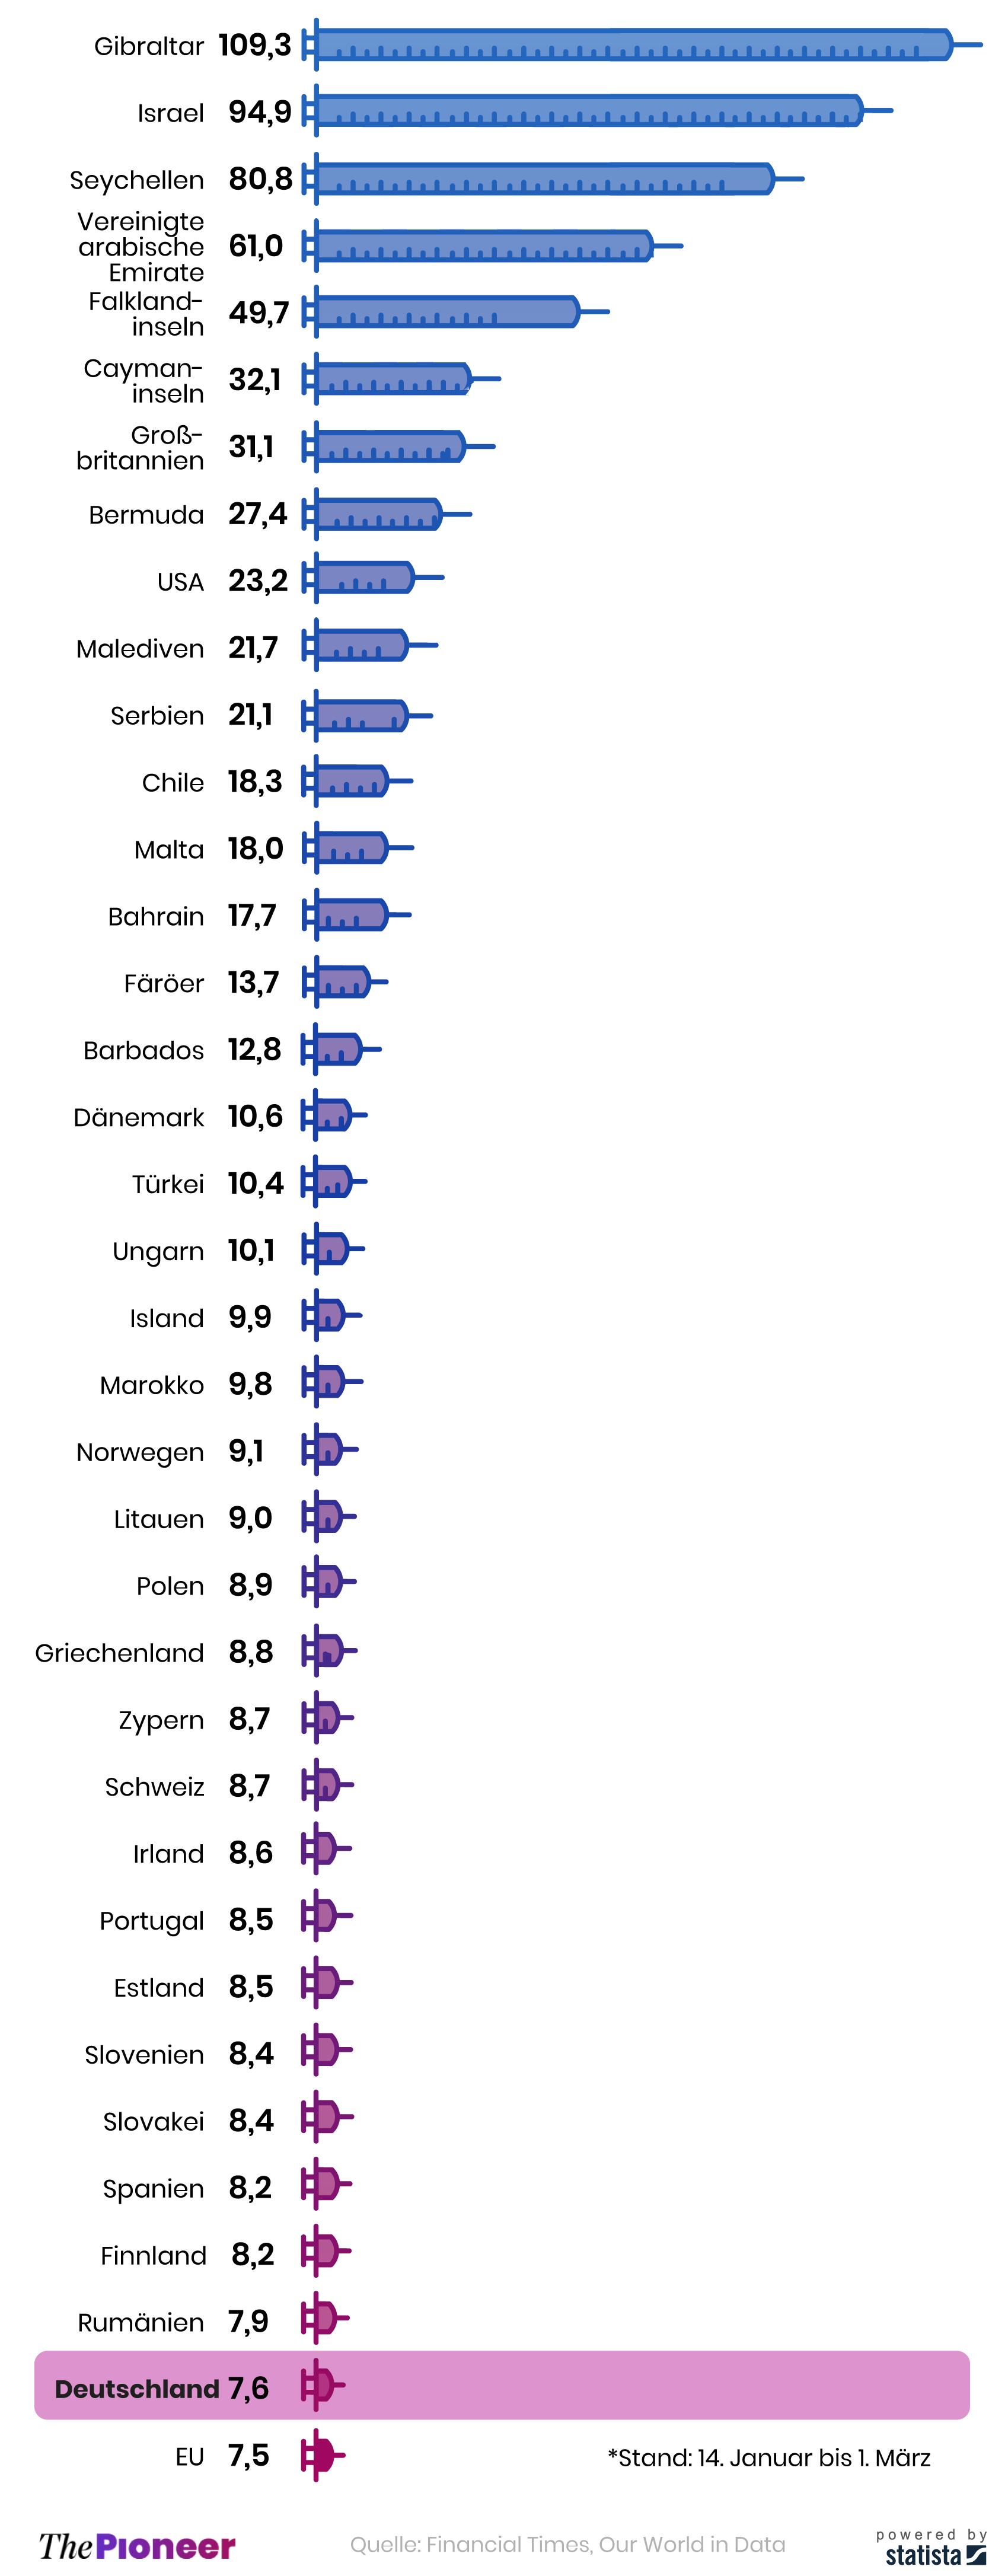 Verabreichte Impfdosen pro 100 Einwohner in 36 ausgewählten Ländern*